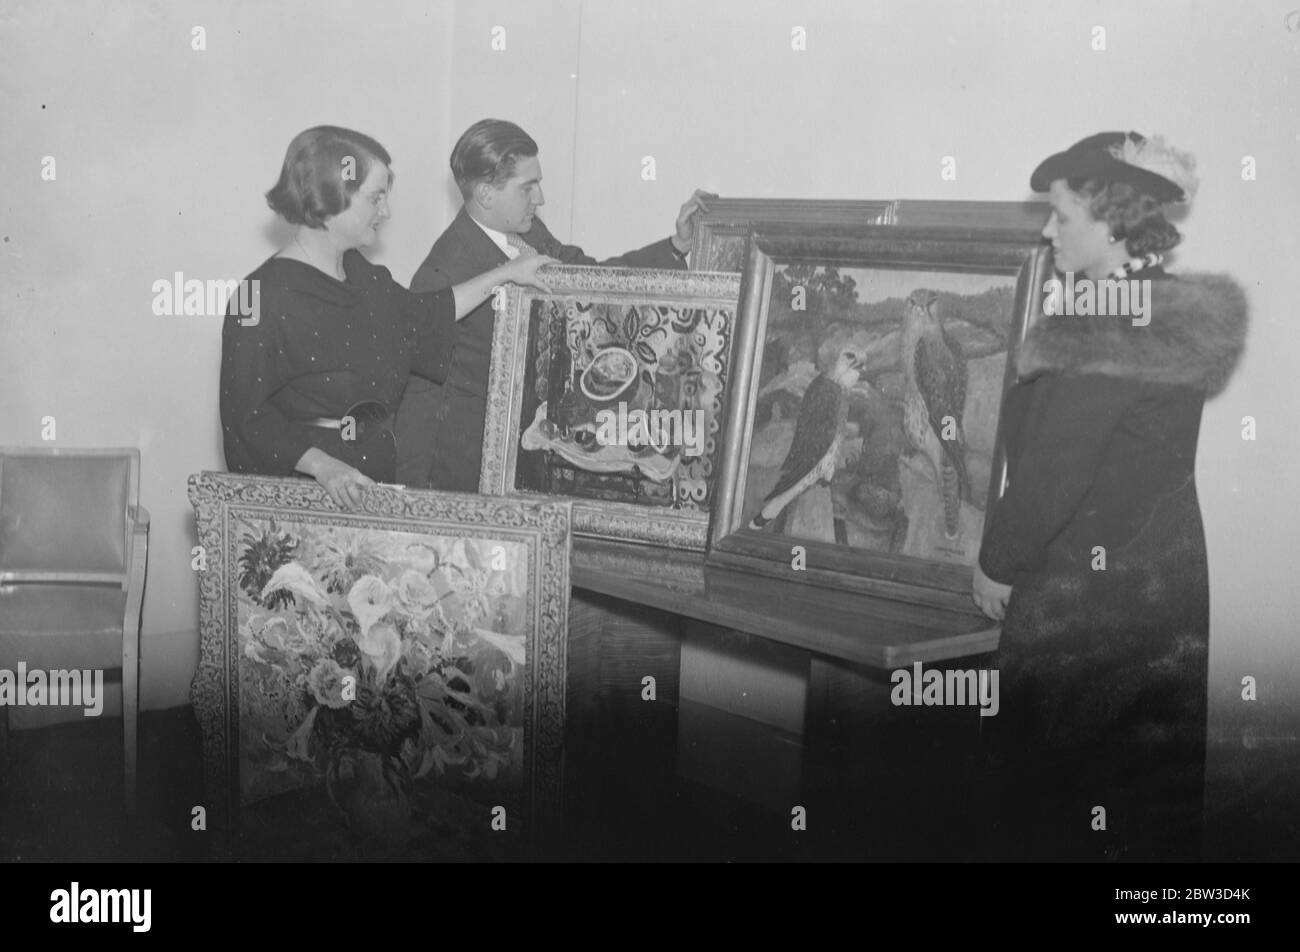 Berühmte Frau Designerin arrangiert Malerei und Skulptur Ausstellung. Frau Betty Joel (links), die berühmte moderne Möbeldesignerin, arrangiert Gemälde für die Ausstellung in ihren Knightsbridge Galerien. 11. Oktober 1935 Stockfoto